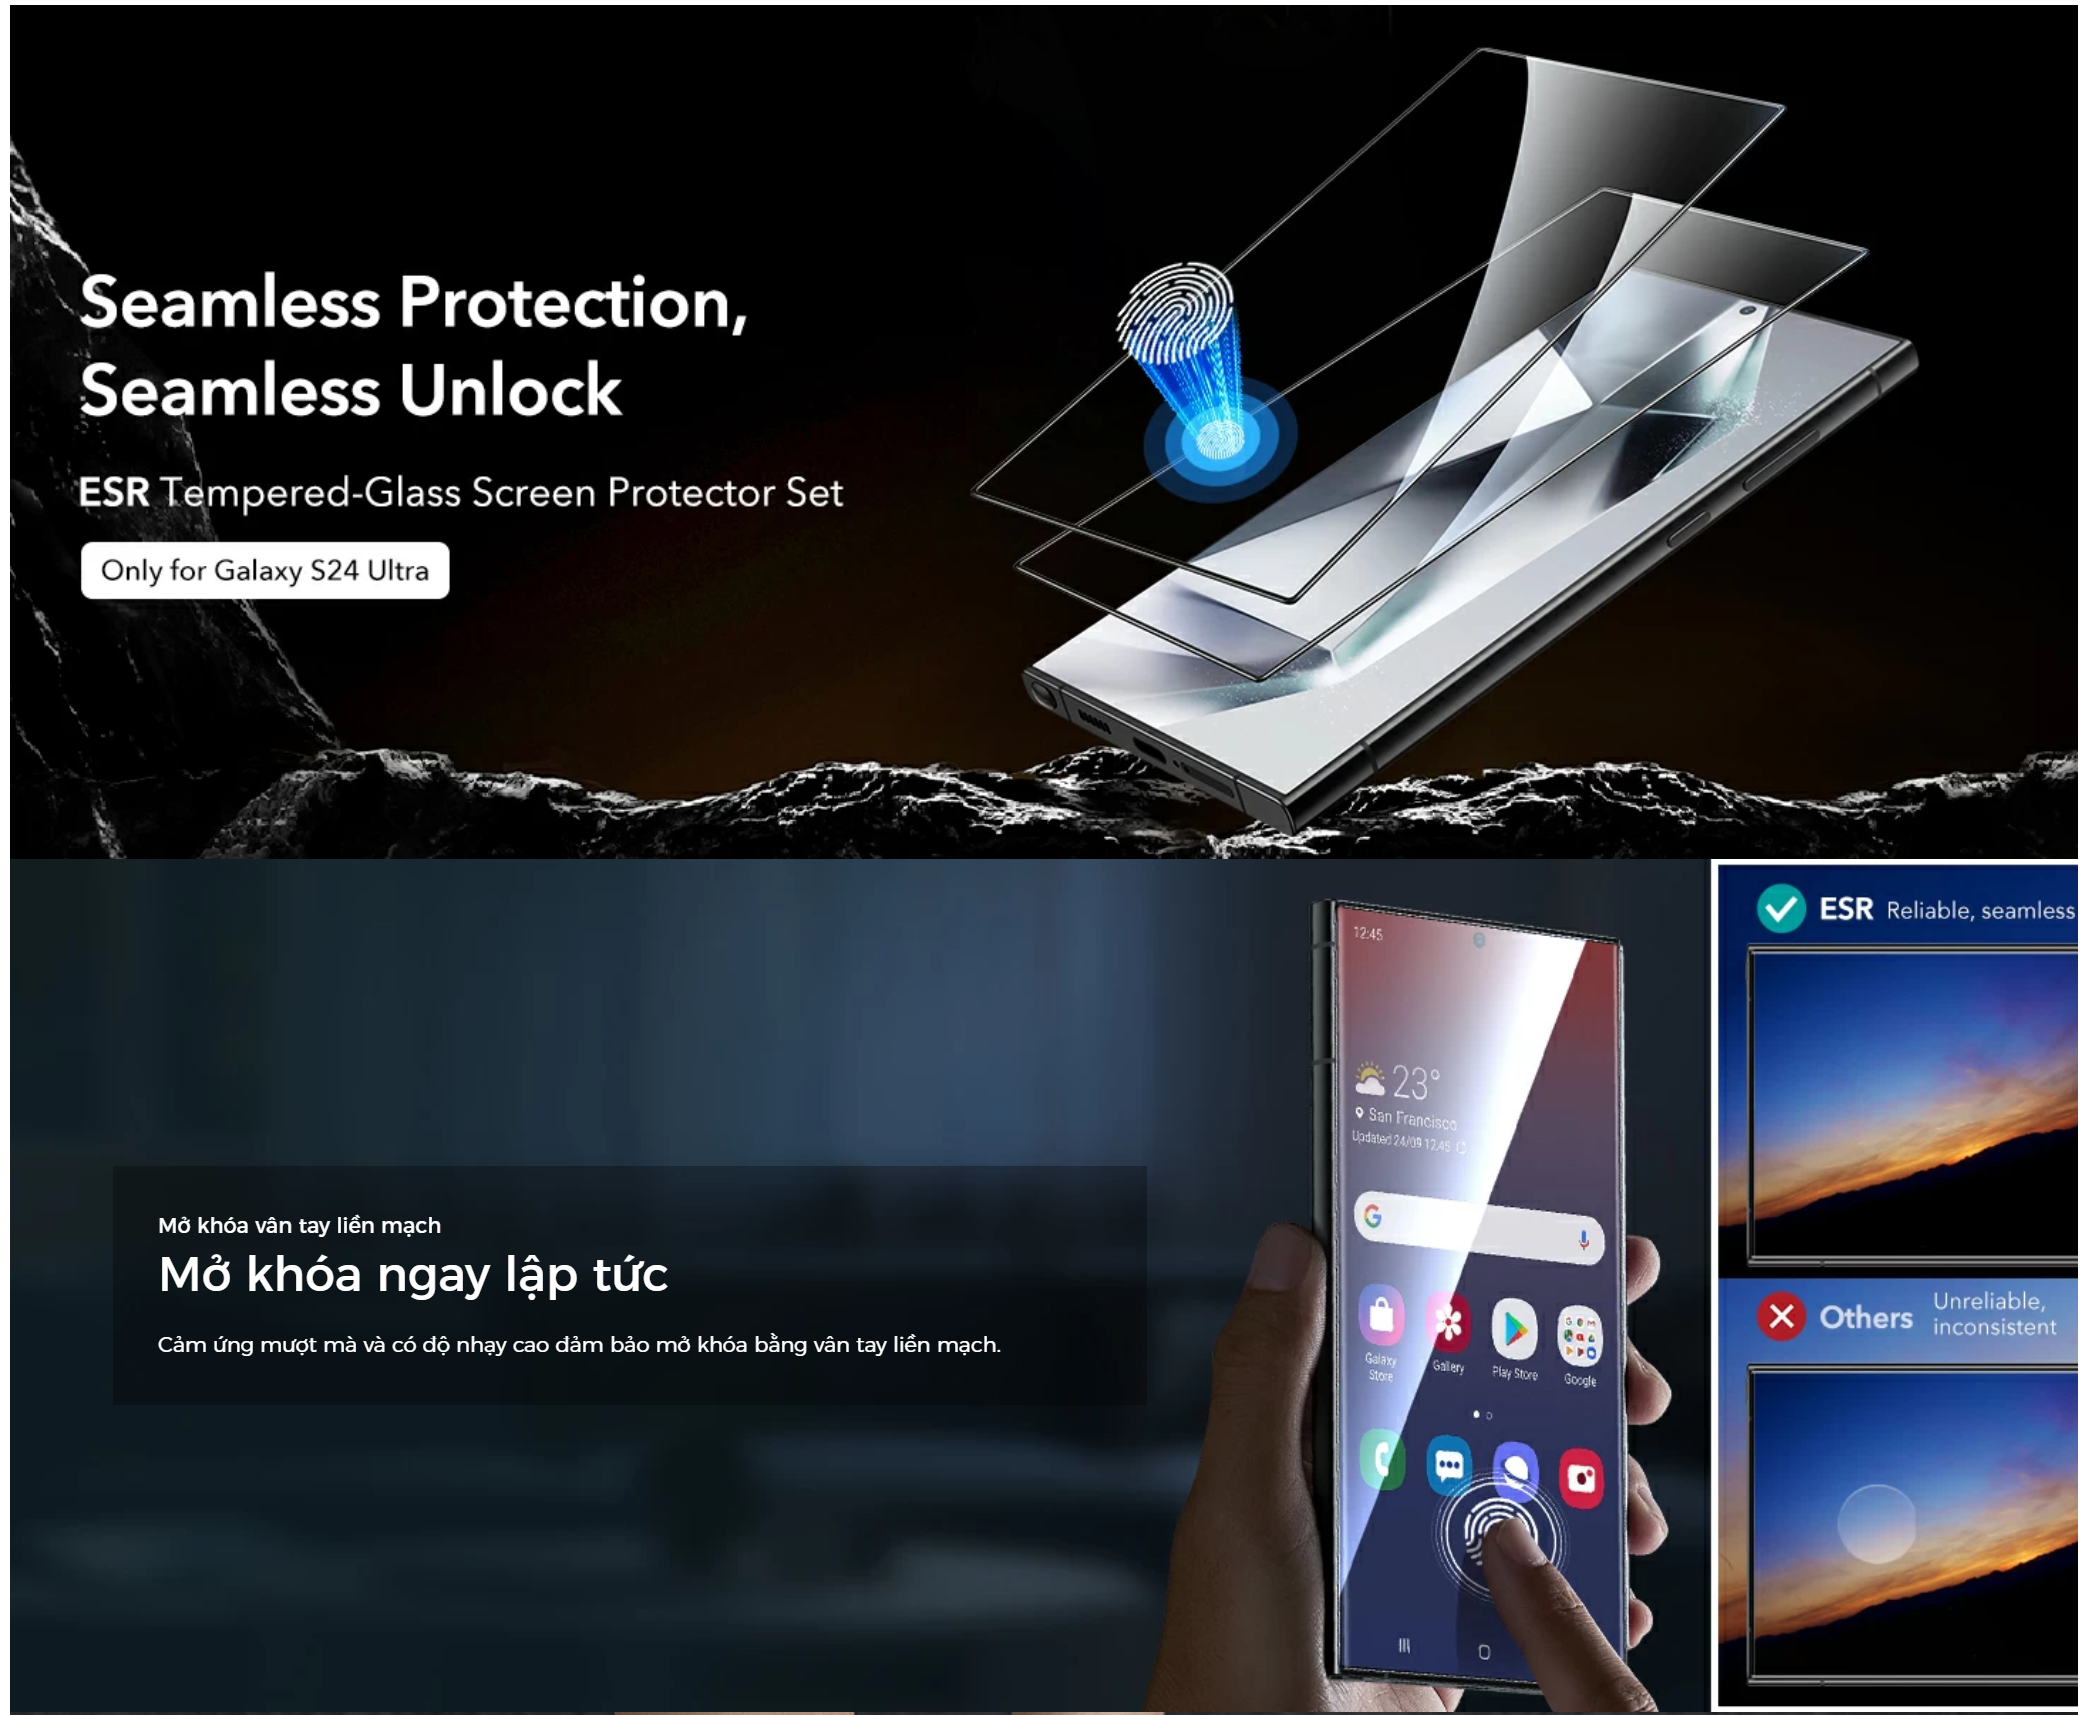 Bộ 2 Kính Cường Lực ESR Tempered-Glass Screen Protector cho Samsung Galaxy S24 Ultra, kèm khung dán_ Hàng chính hãng